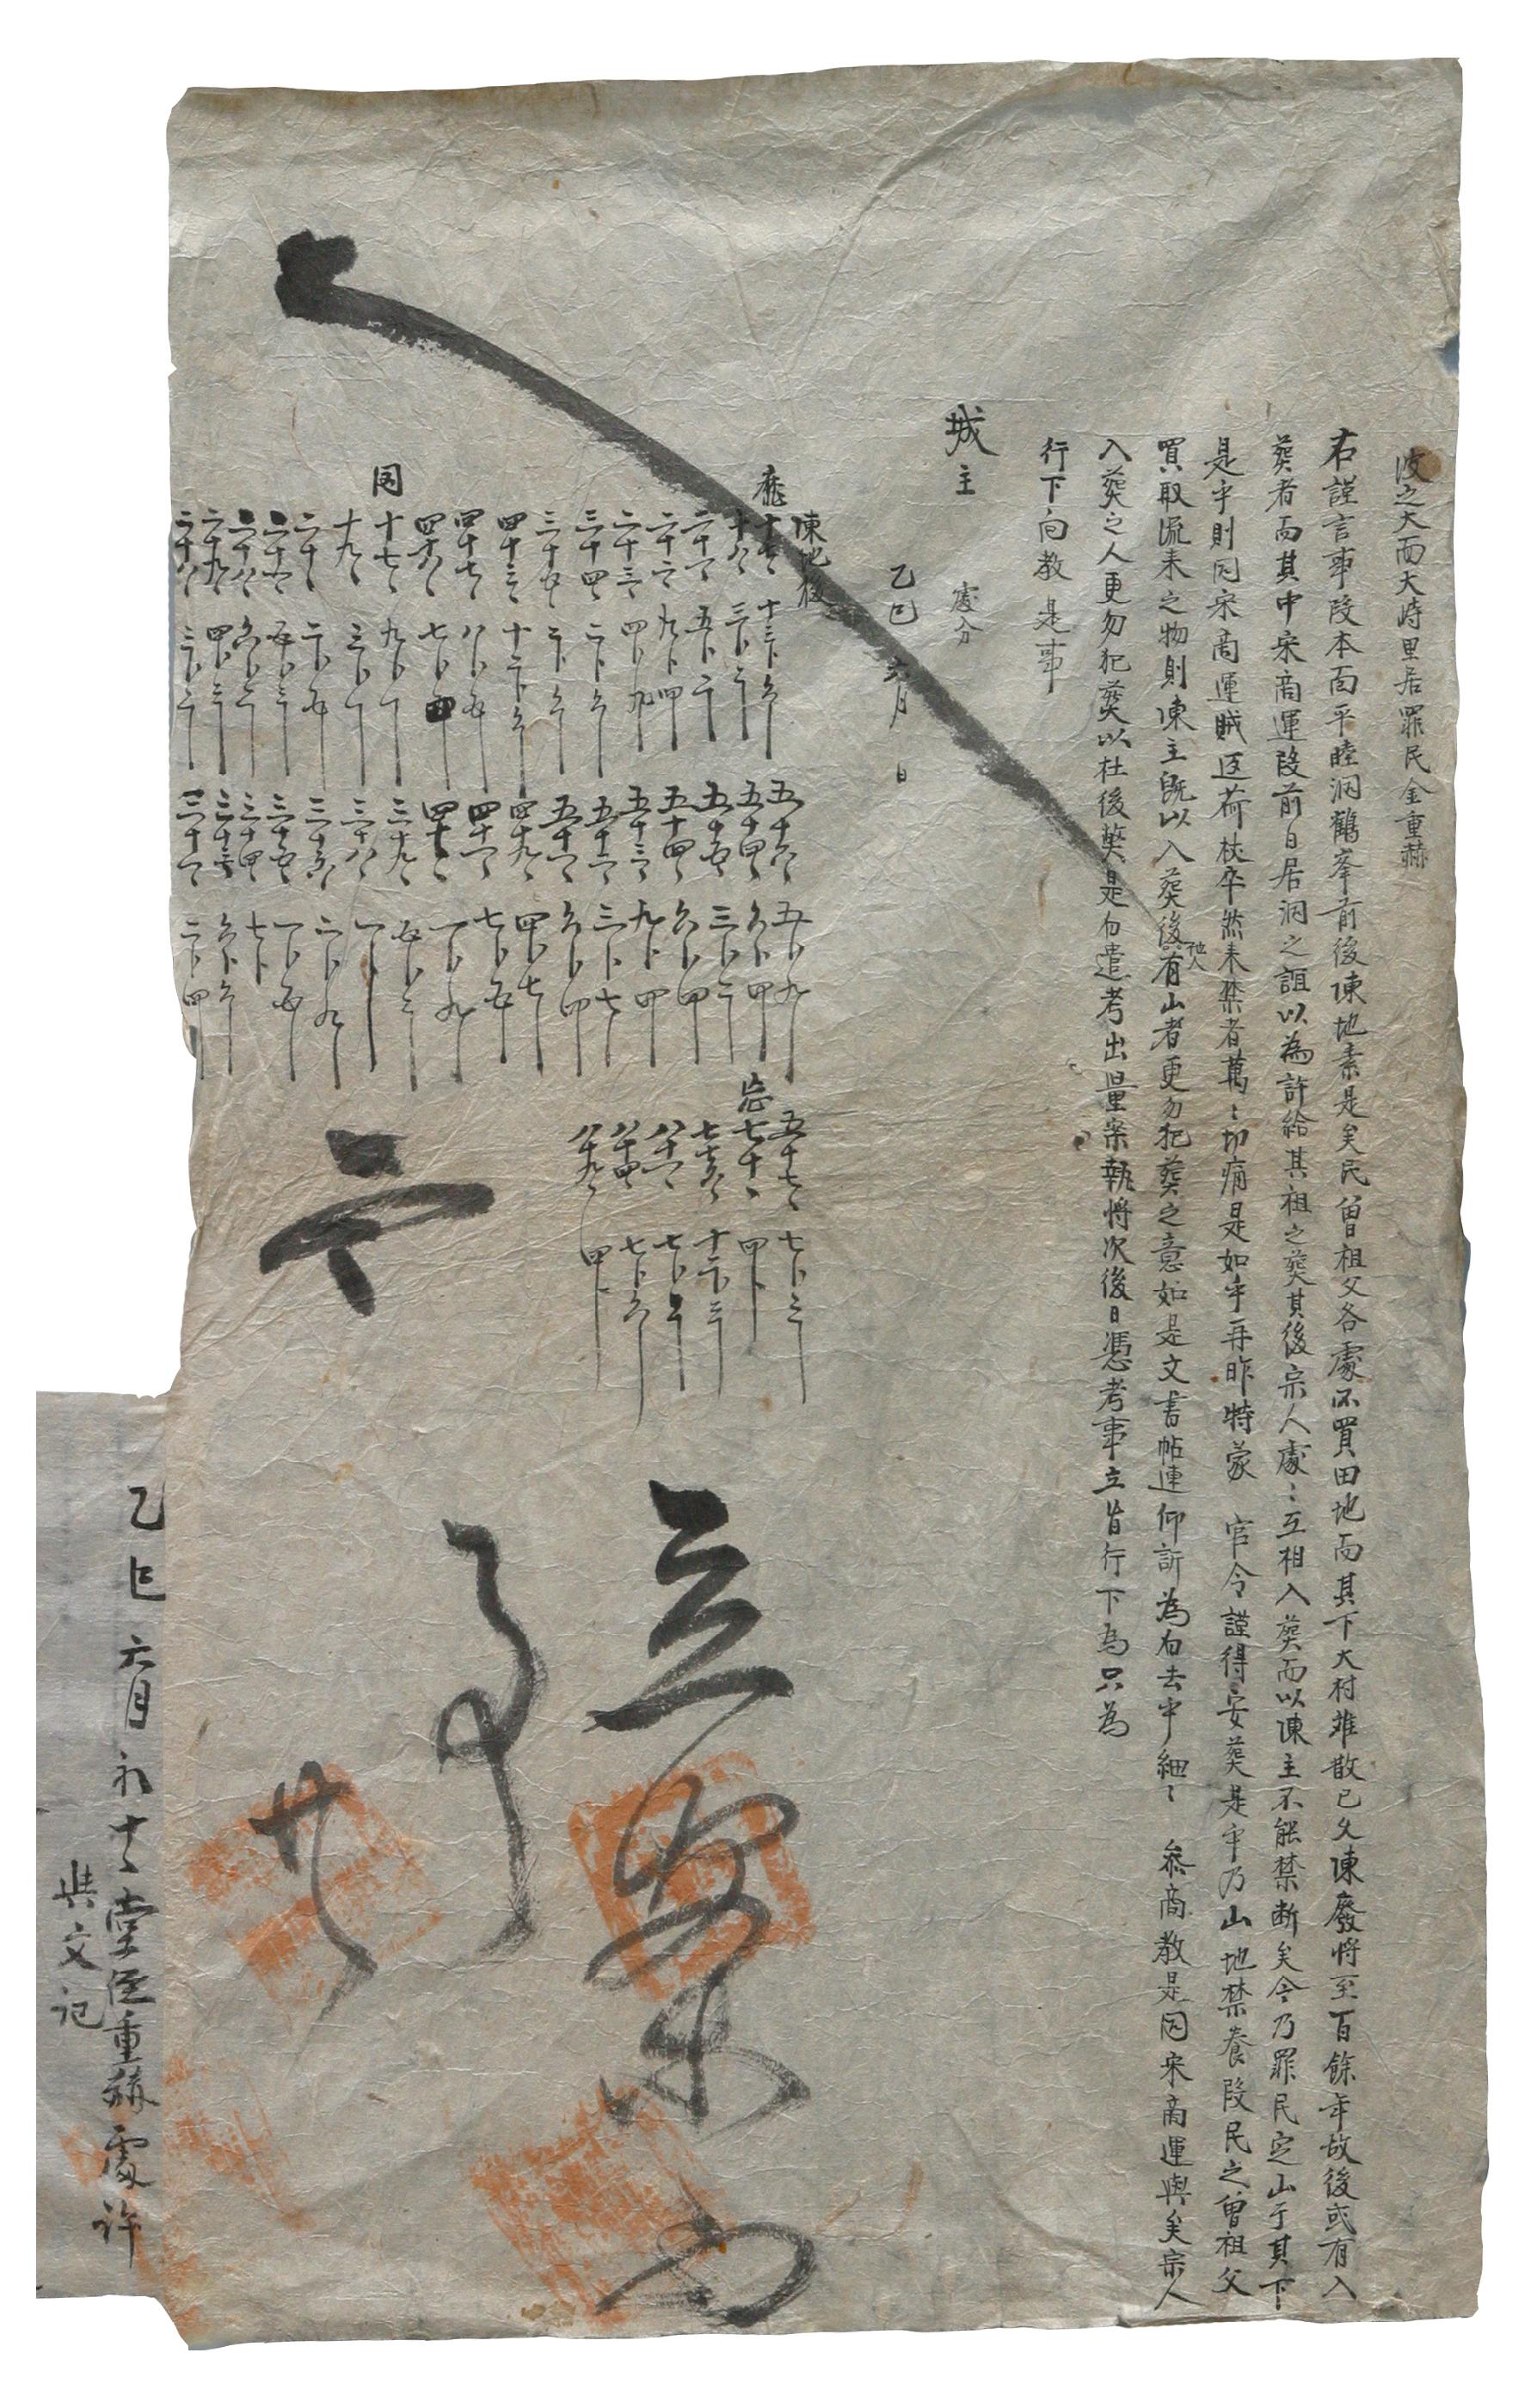 1508년에 김효원의 처 오씨가 남편의 조카 김연에게 노비와 토지를 증여한 분재기